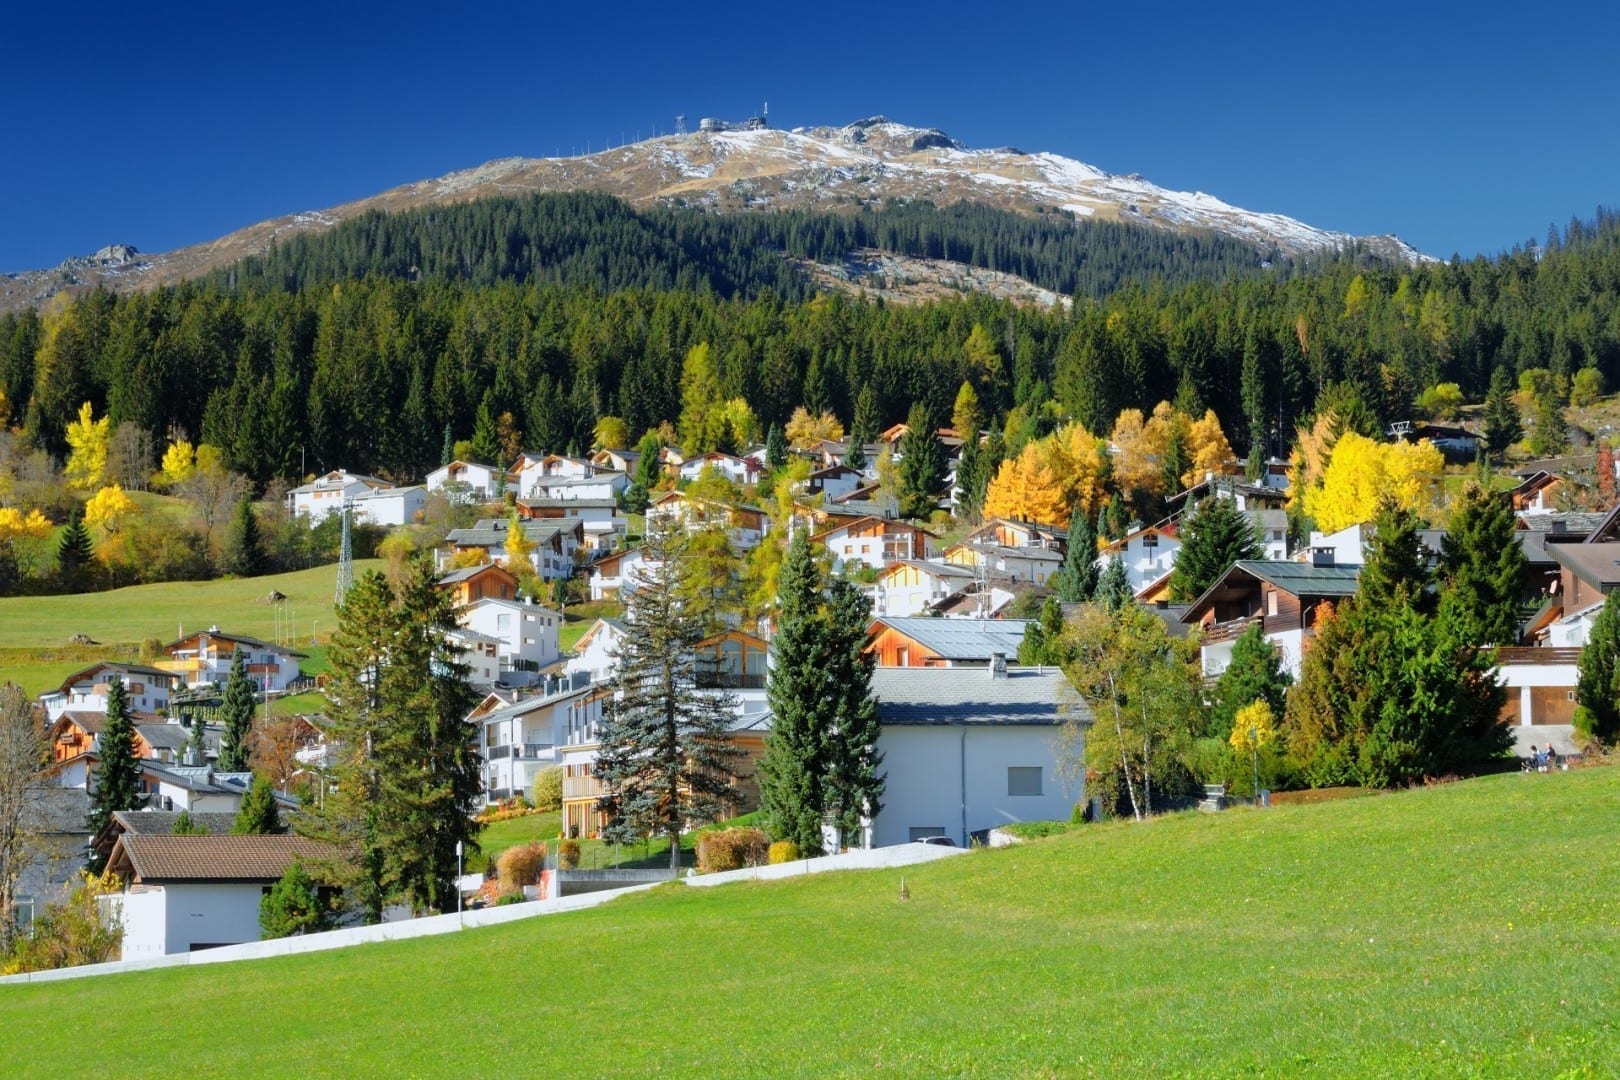 La montaña Crap Sogn Gion vista desde el pueblo de Flims Laax Suiza